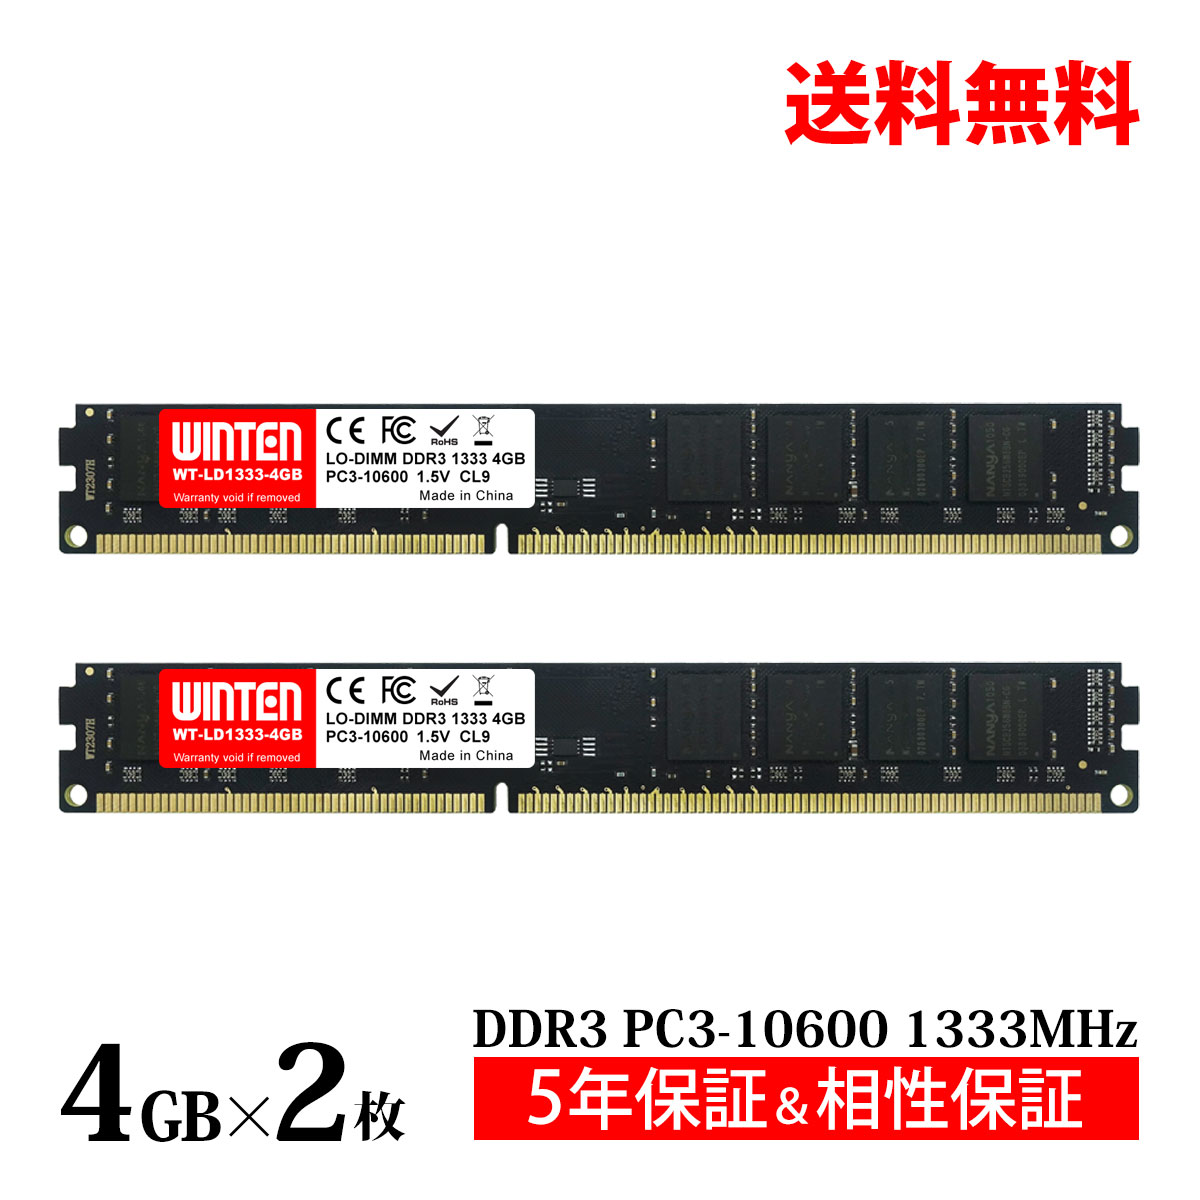 デスクトップPC用 メモリ 8GB(4GB×2枚) PC3-10600(DDR3 1333) WT-LD1333-D8GB【相性保証 製品5年保証 送料無料 即日出荷】DDR3 SDRAM LO-DIMM 内蔵メモリー 増設メモリー 6149